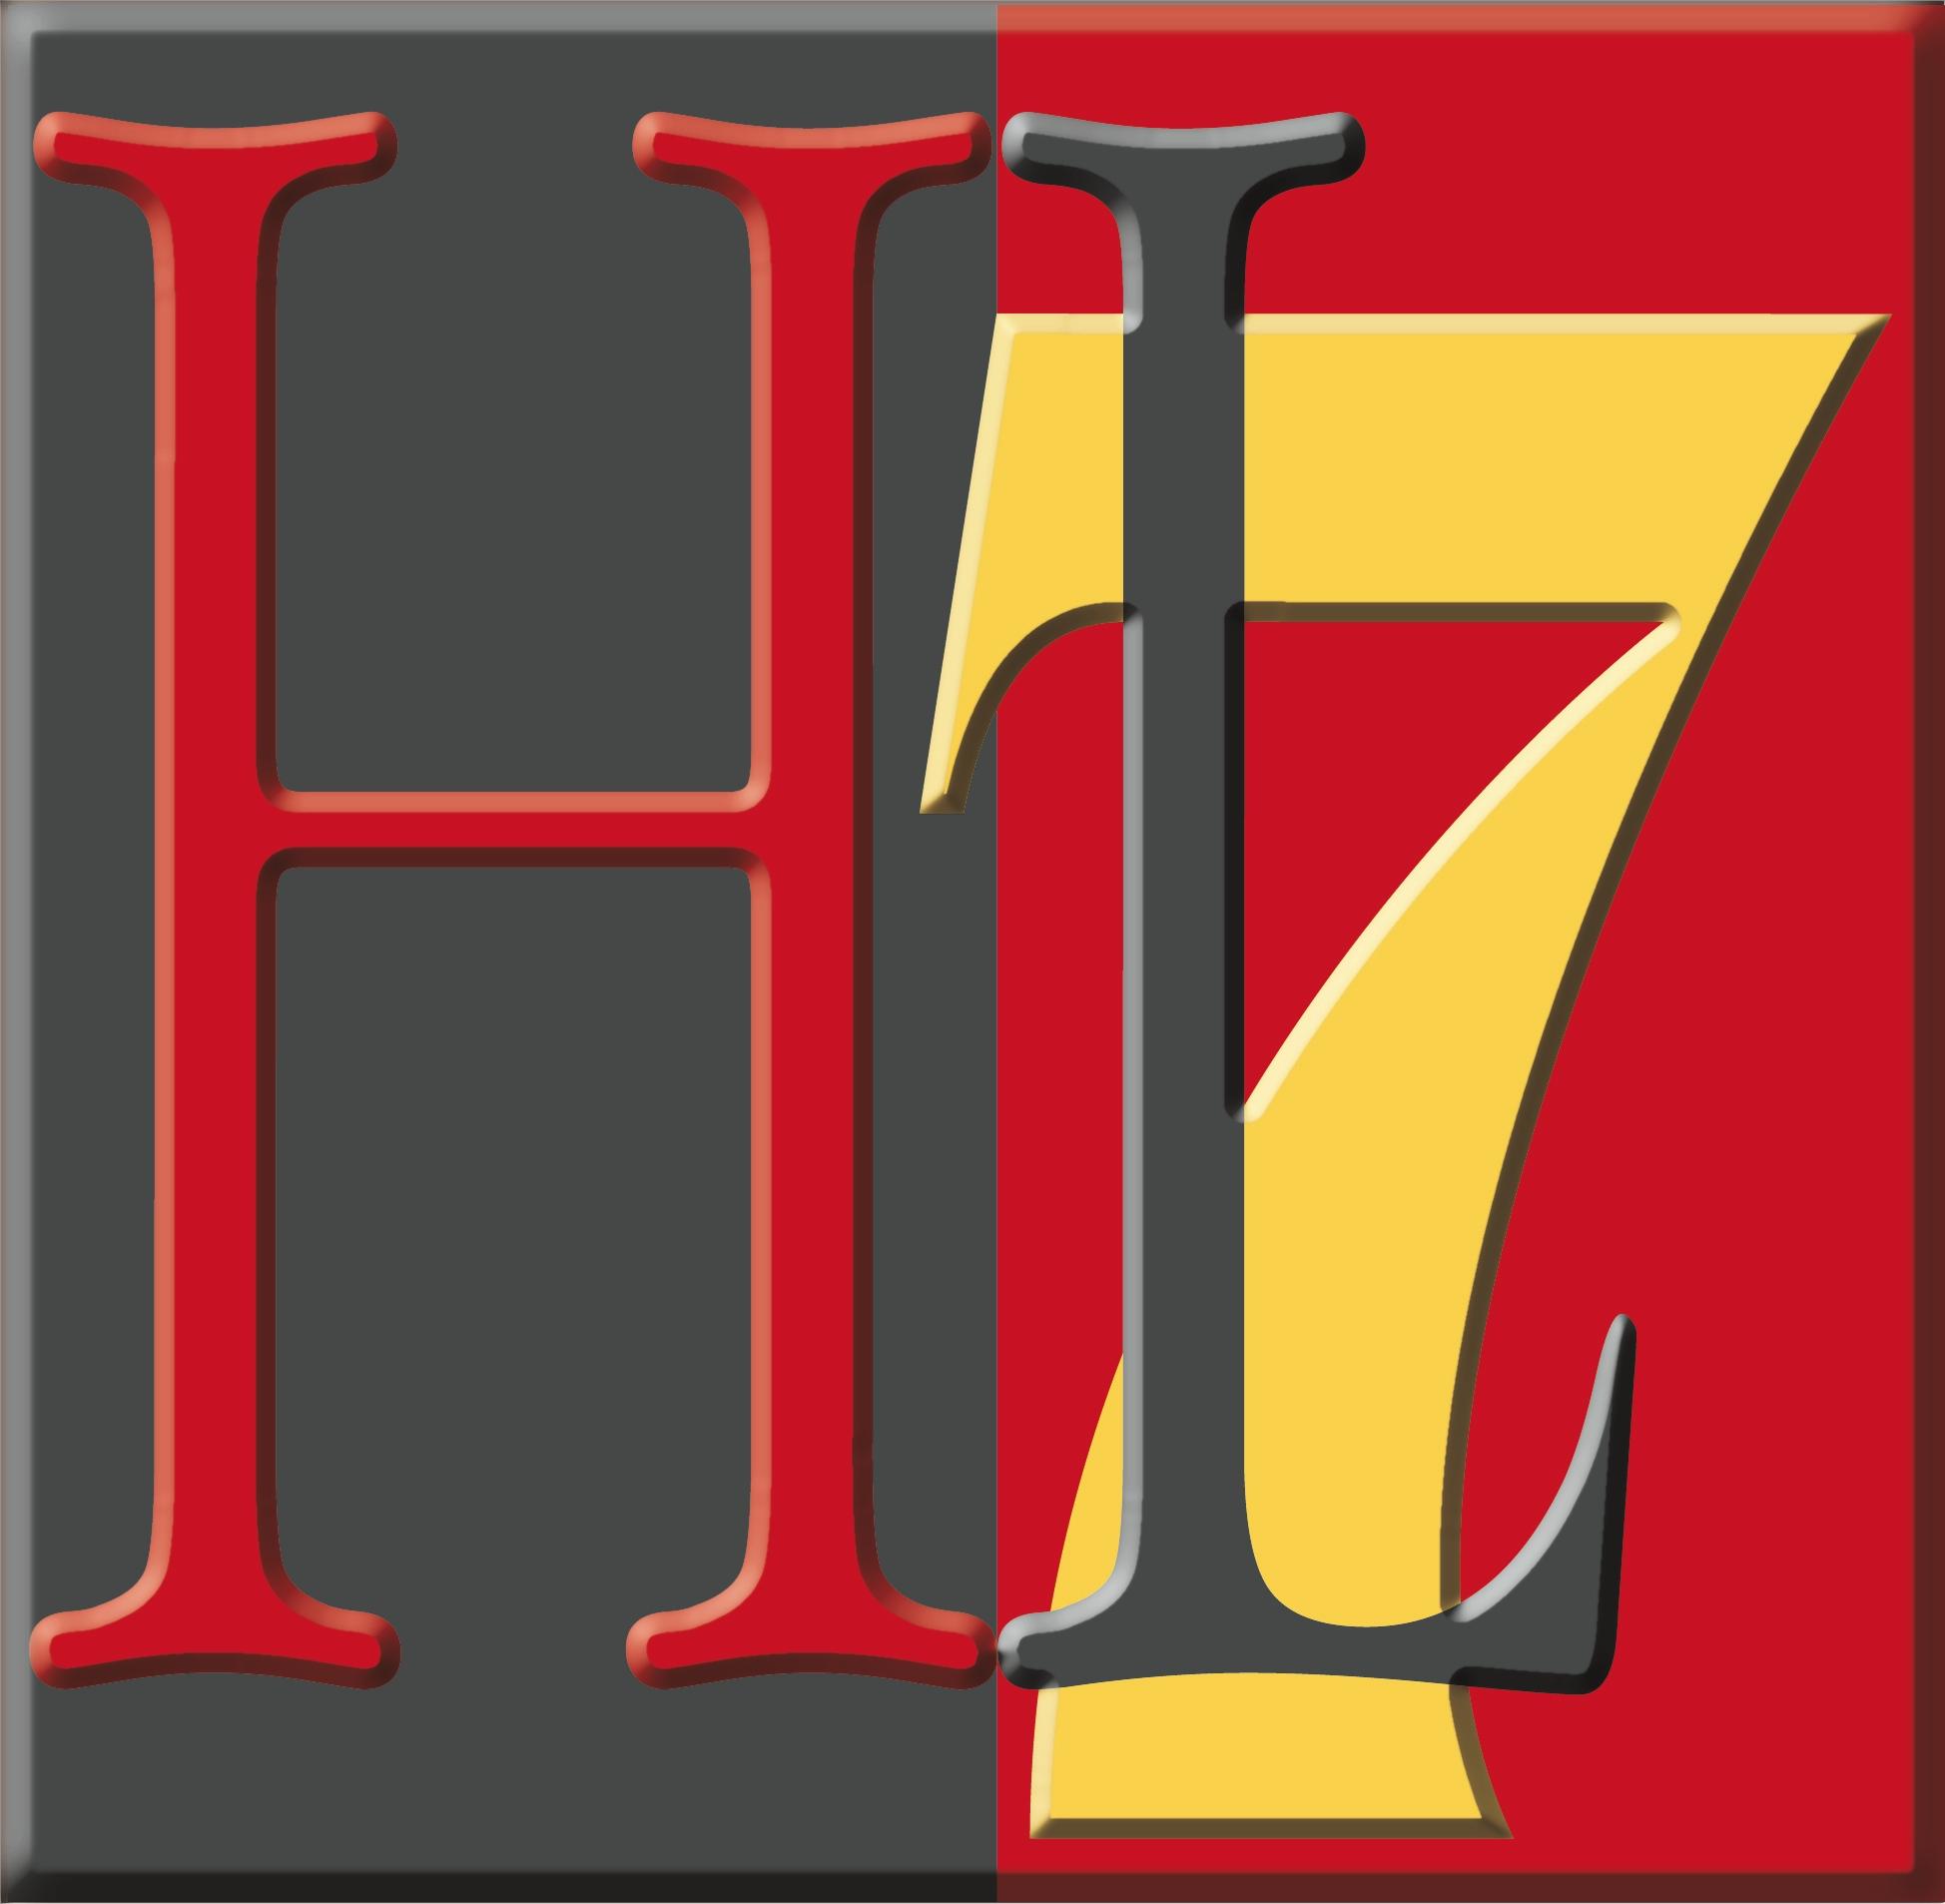 HL7 anuncio que sus estandares seran libres.